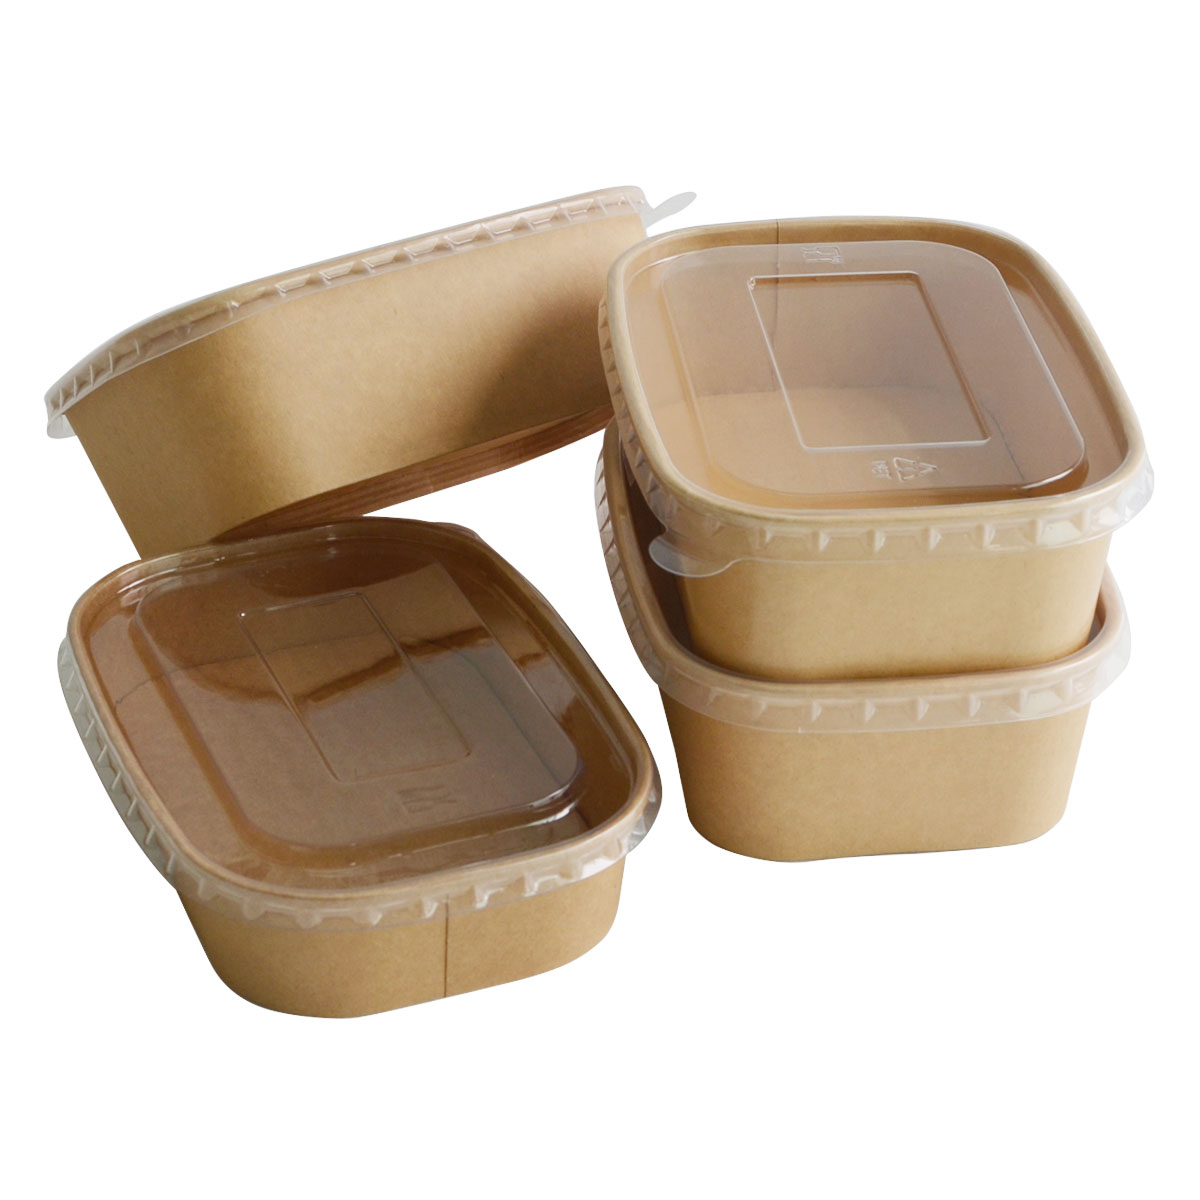 Kaufen Öko-Bambus-Lebensmittelbehälter zum Mitnehmen Papier-Lunchbox Fast-Food-Verpackungsbox;Öko-Bambus-Lebensmittelbehälter zum Mitnehmen Papier-Lunchbox Fast-Food-Verpackungsbox Preis;Öko-Bambus-Lebensmittelbehälter zum Mitnehmen Papier-Lunchbox Fast-Food-Verpackungsbox Marken;Öko-Bambus-Lebensmittelbehälter zum Mitnehmen Papier-Lunchbox Fast-Food-Verpackungsbox Hersteller;Öko-Bambus-Lebensmittelbehälter zum Mitnehmen Papier-Lunchbox Fast-Food-Verpackungsbox Zitat;Öko-Bambus-Lebensmittelbehälter zum Mitnehmen Papier-Lunchbox Fast-Food-Verpackungsbox Unternehmen